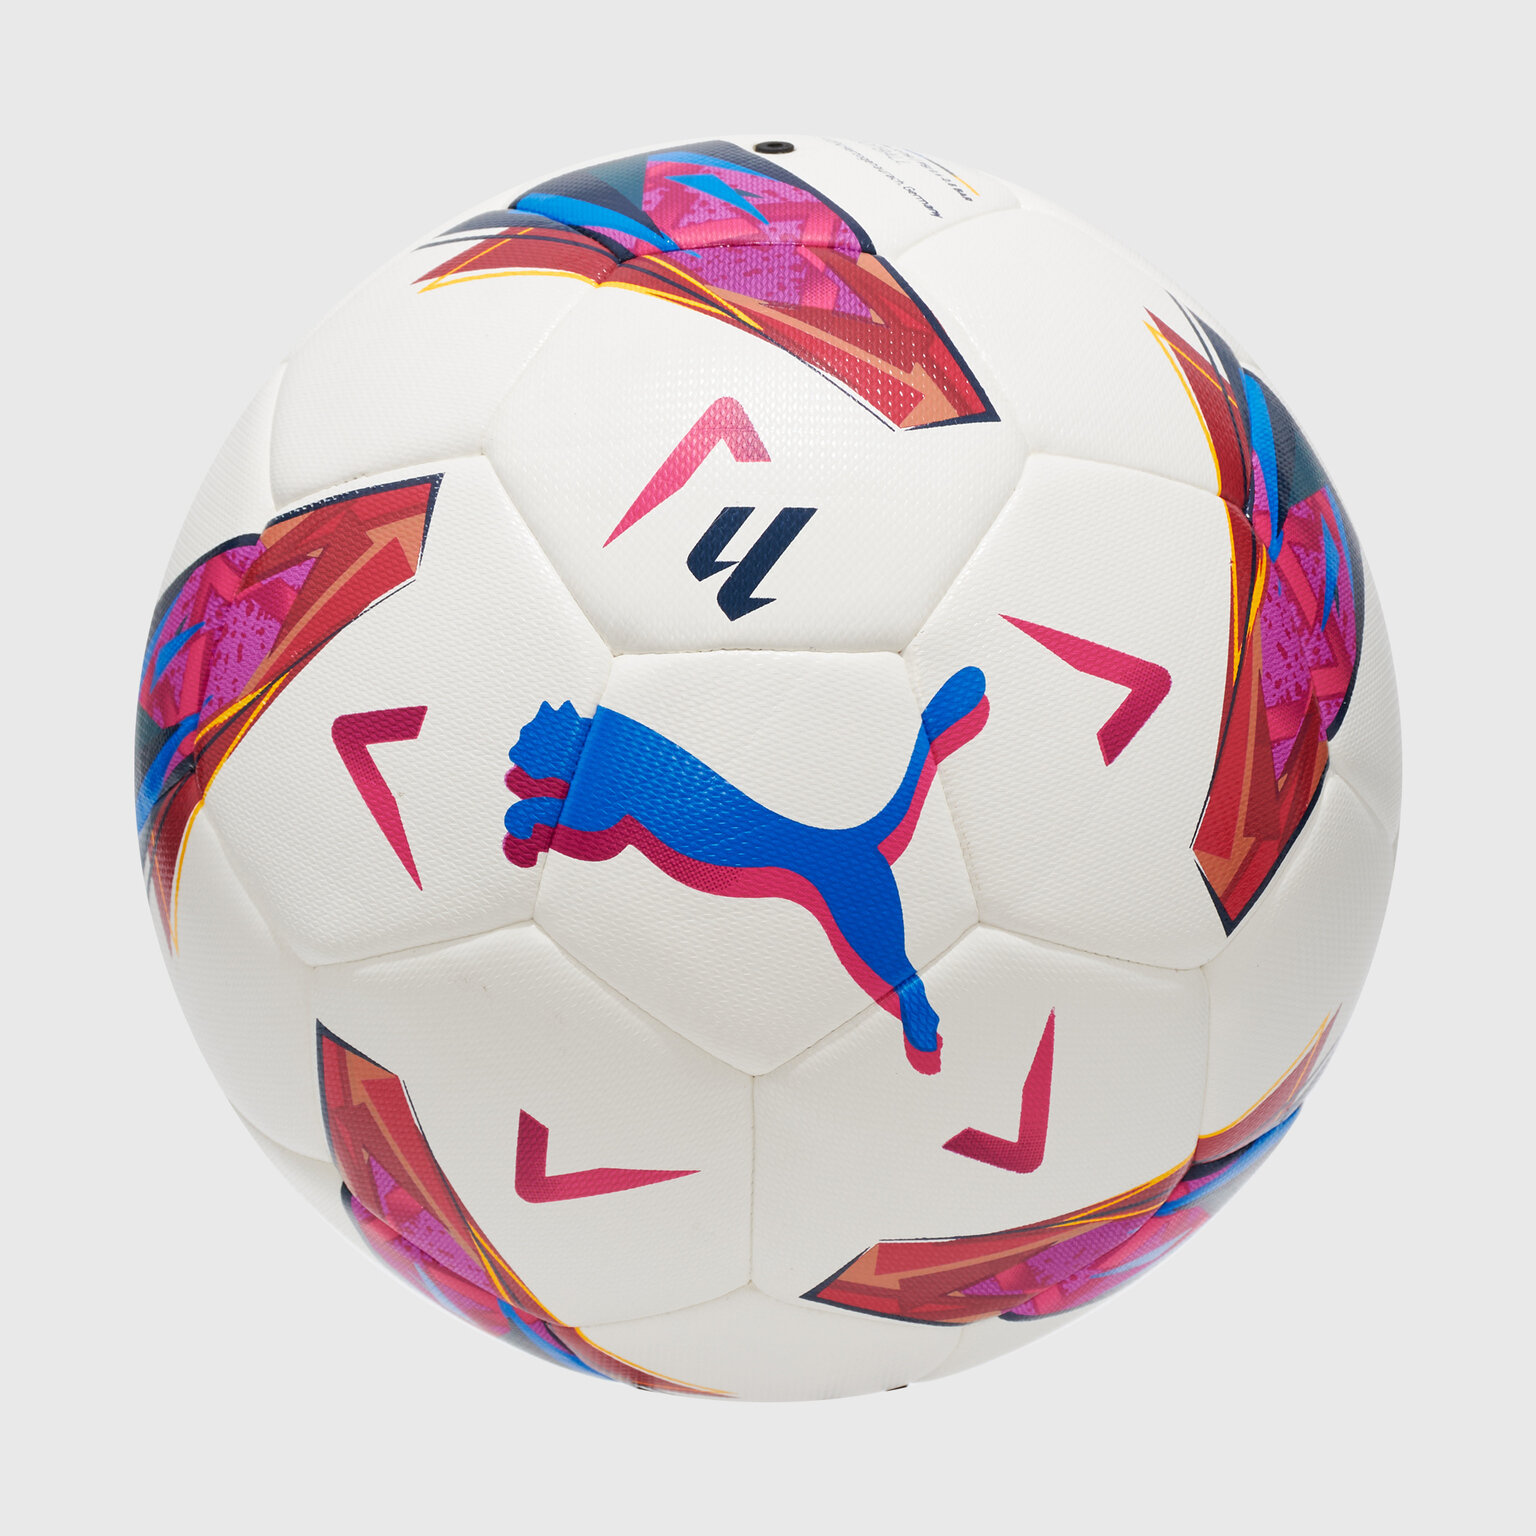 Футбольный мяч Puma Orbita Laliga 1 08410801, размер 3, Белый